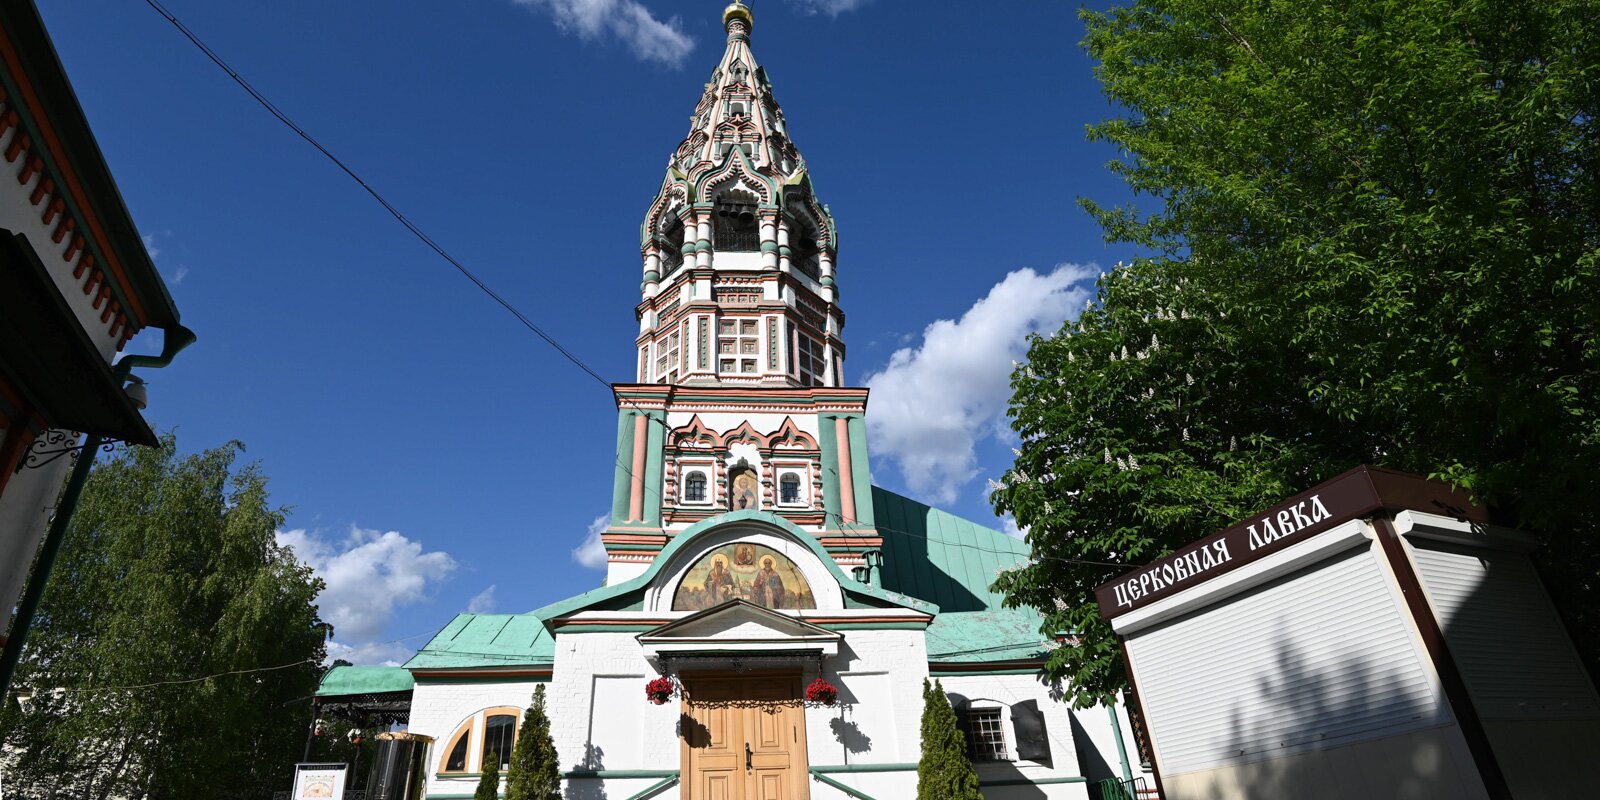 Самая высокая шатровая колокольня и изразцы на фасаде: чем еще ценна церковь Николы в Хамовниках